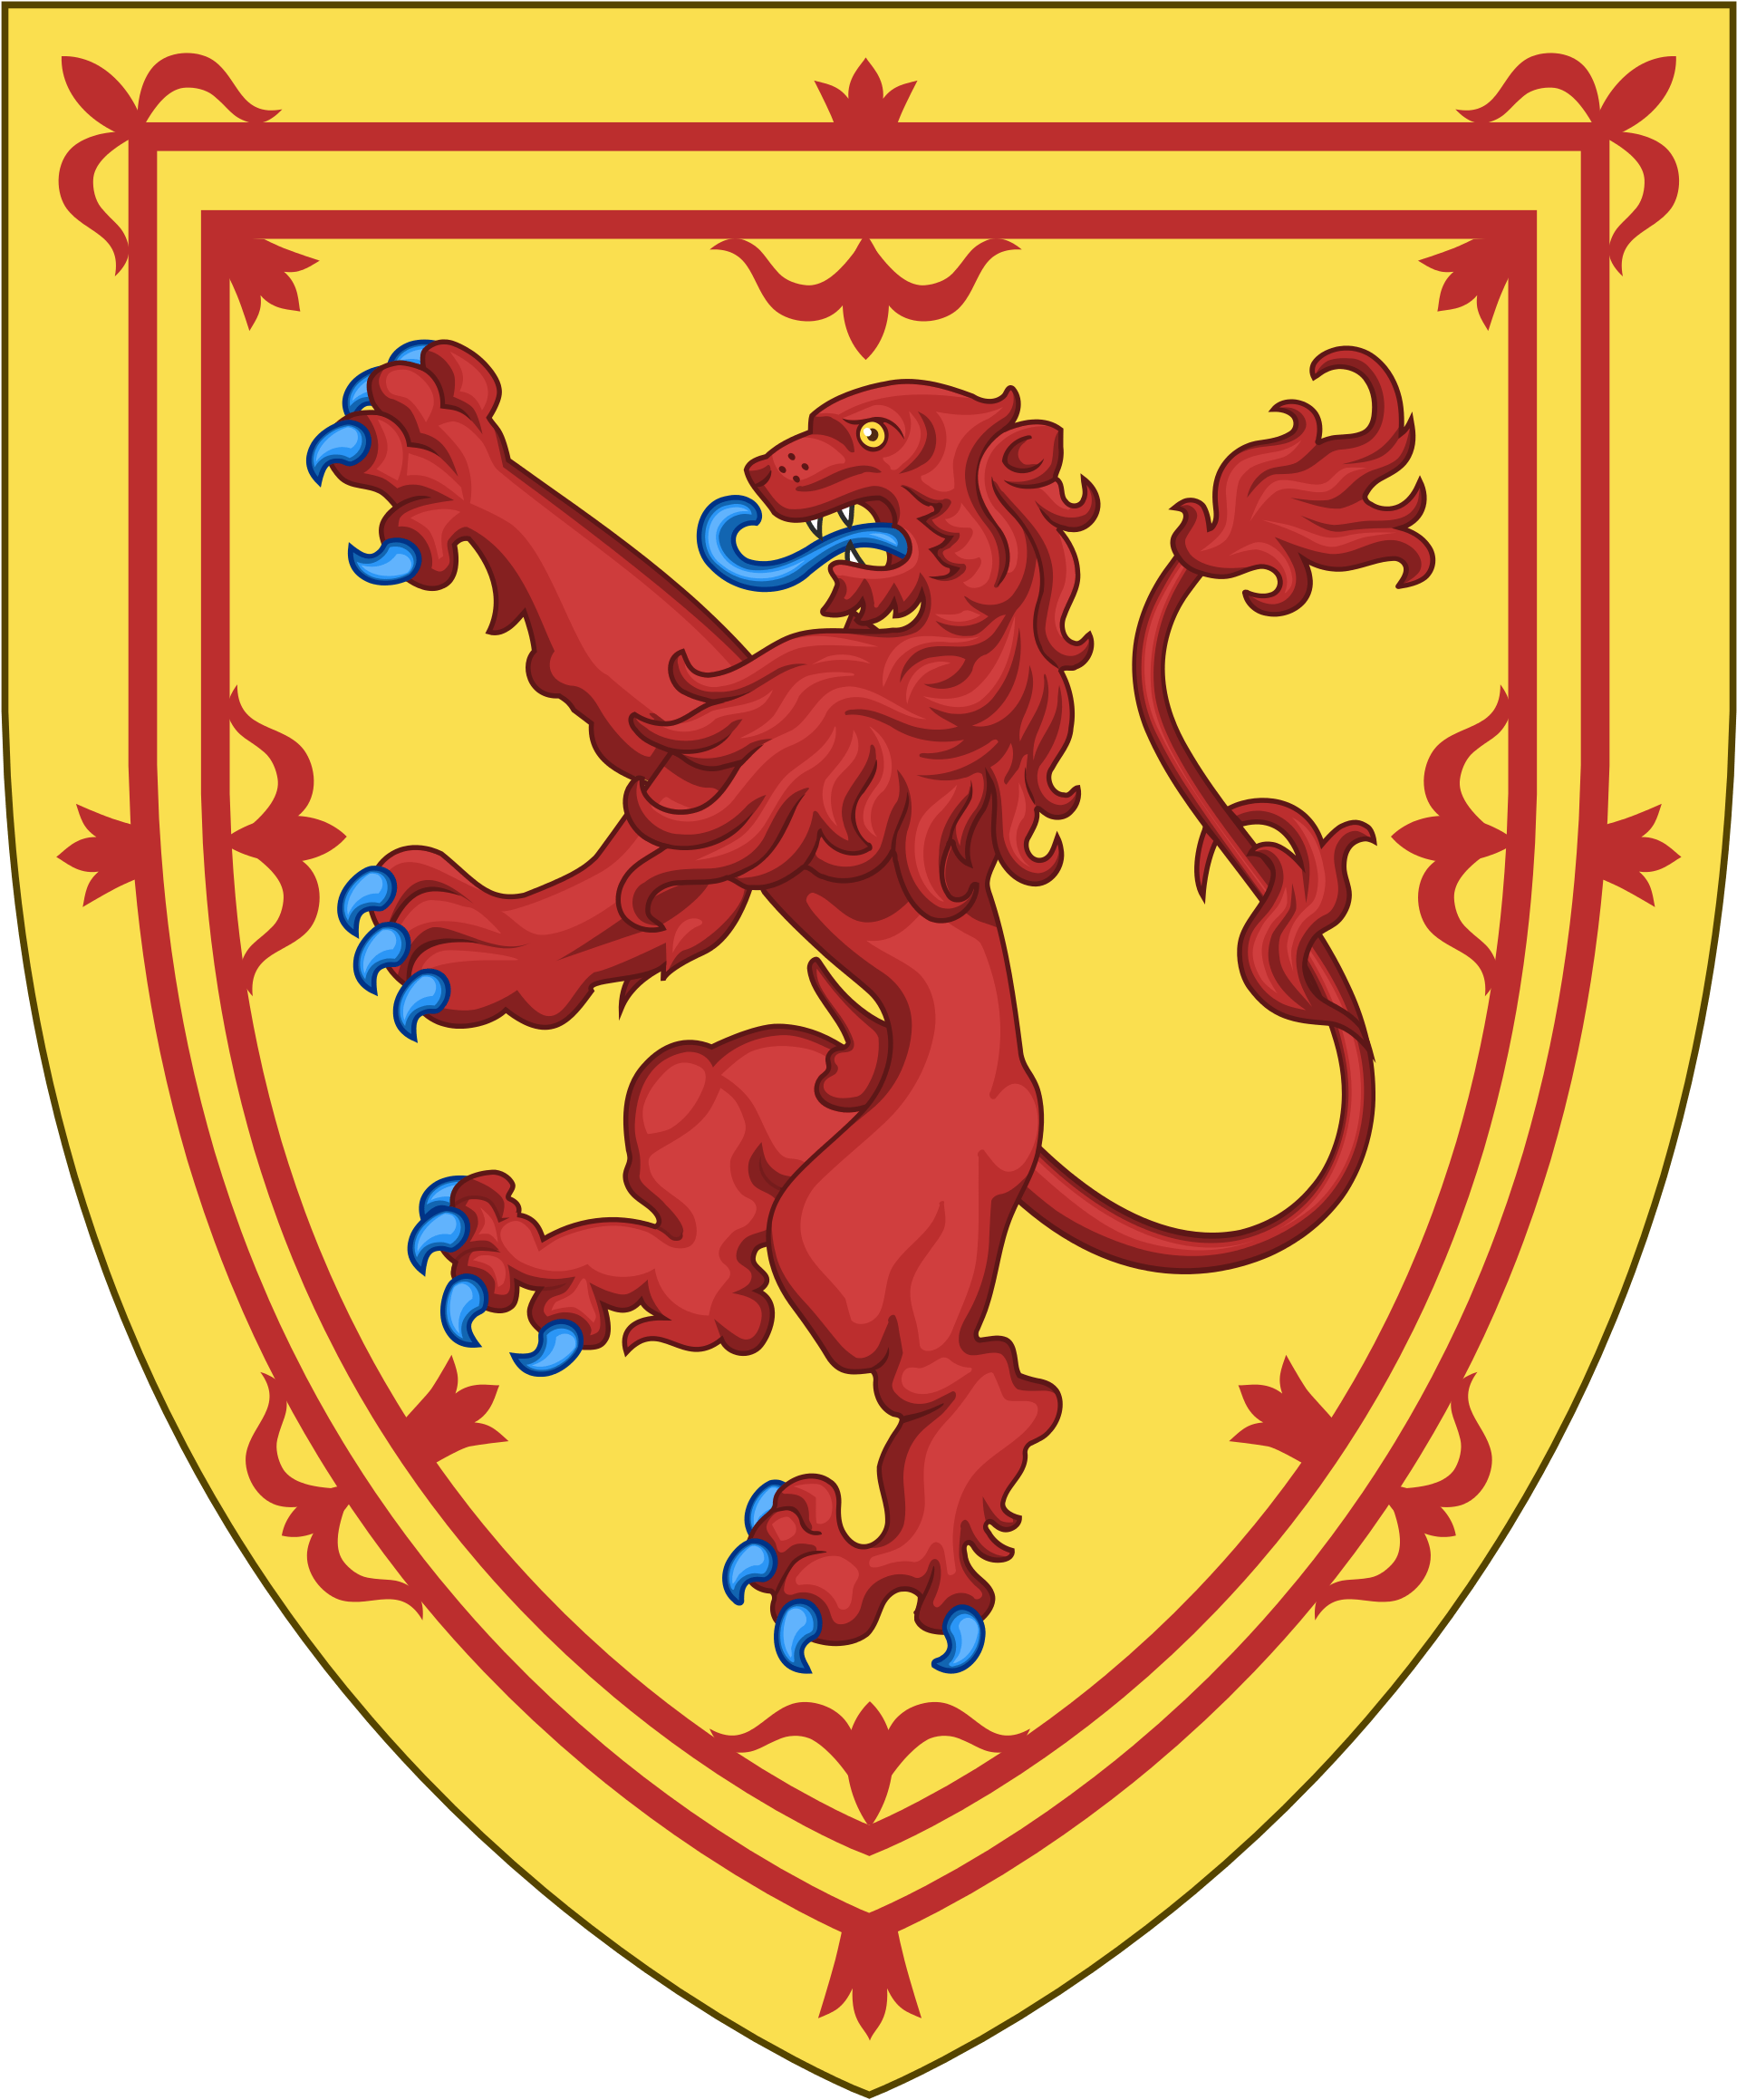 Kingdom Of Scotland (1920x2323)